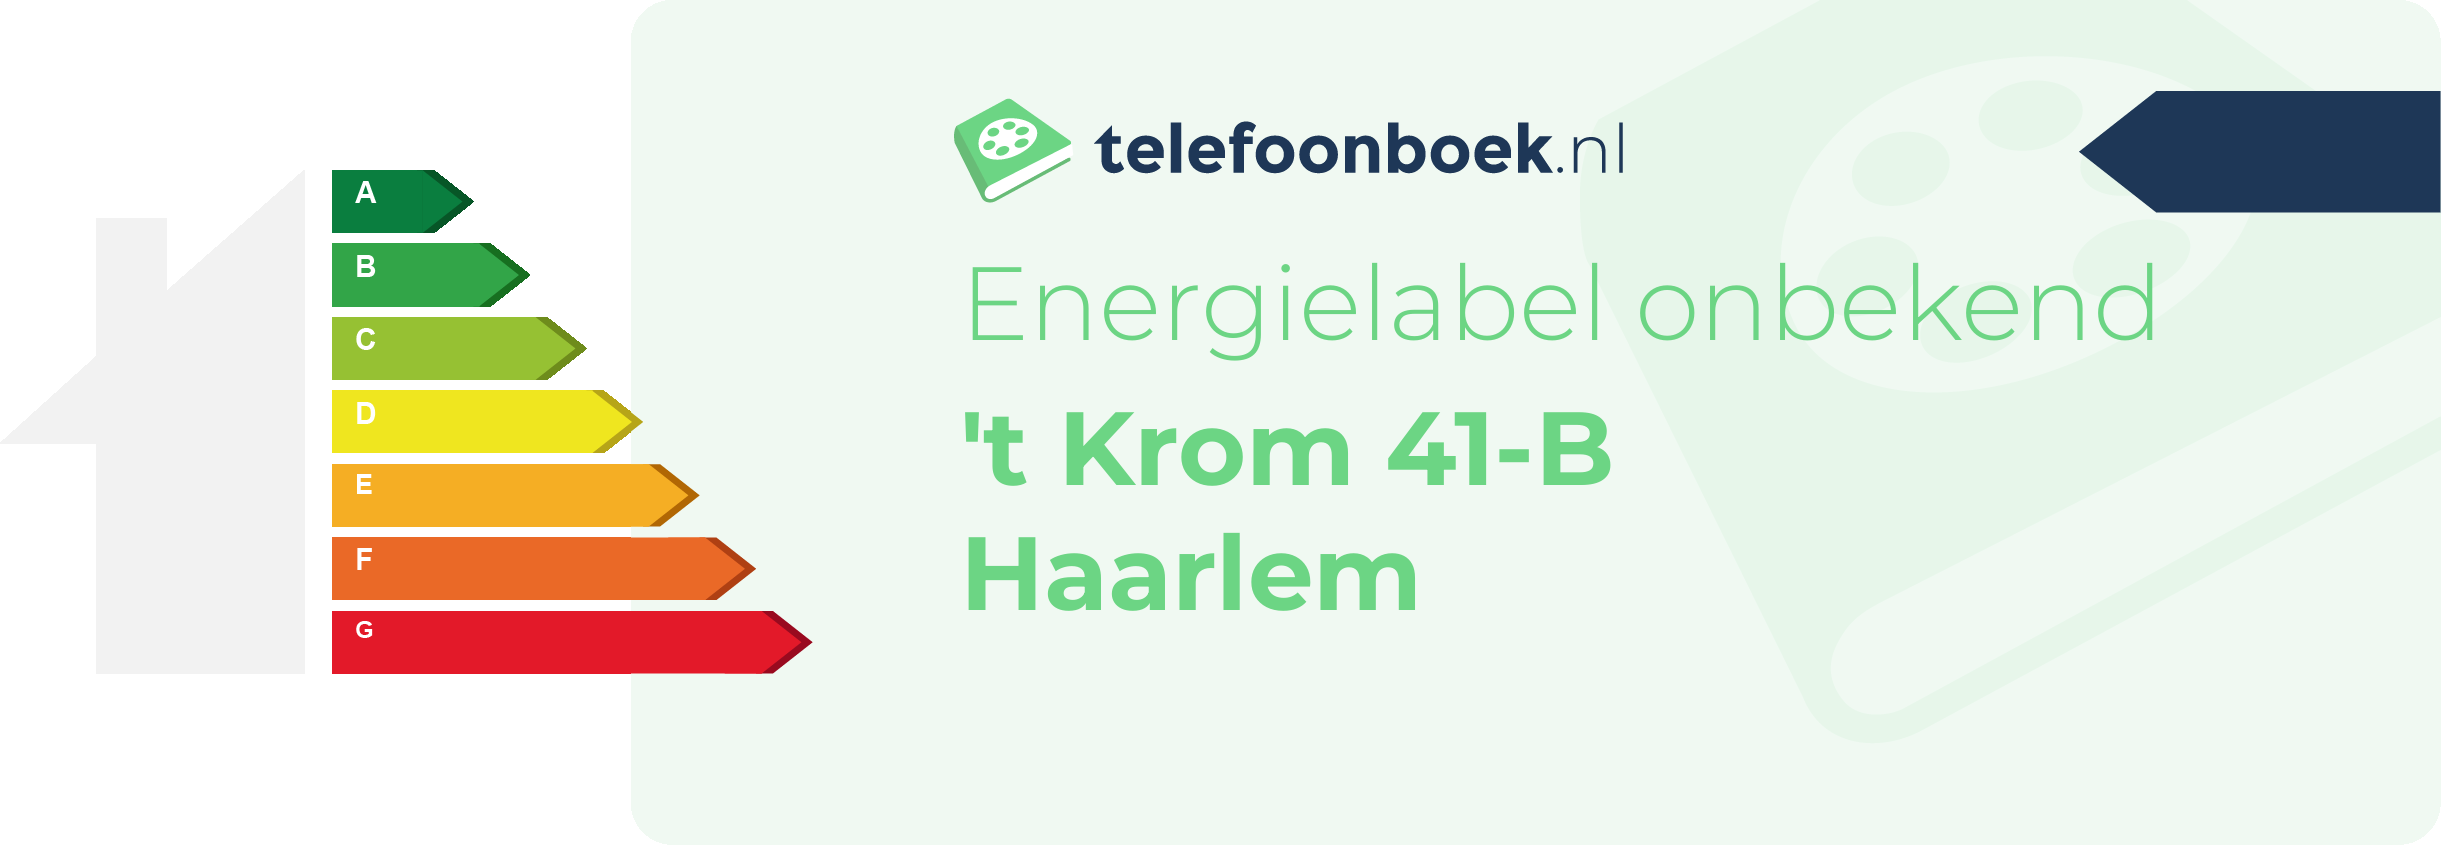 Energielabel 't Krom 41-B Haarlem